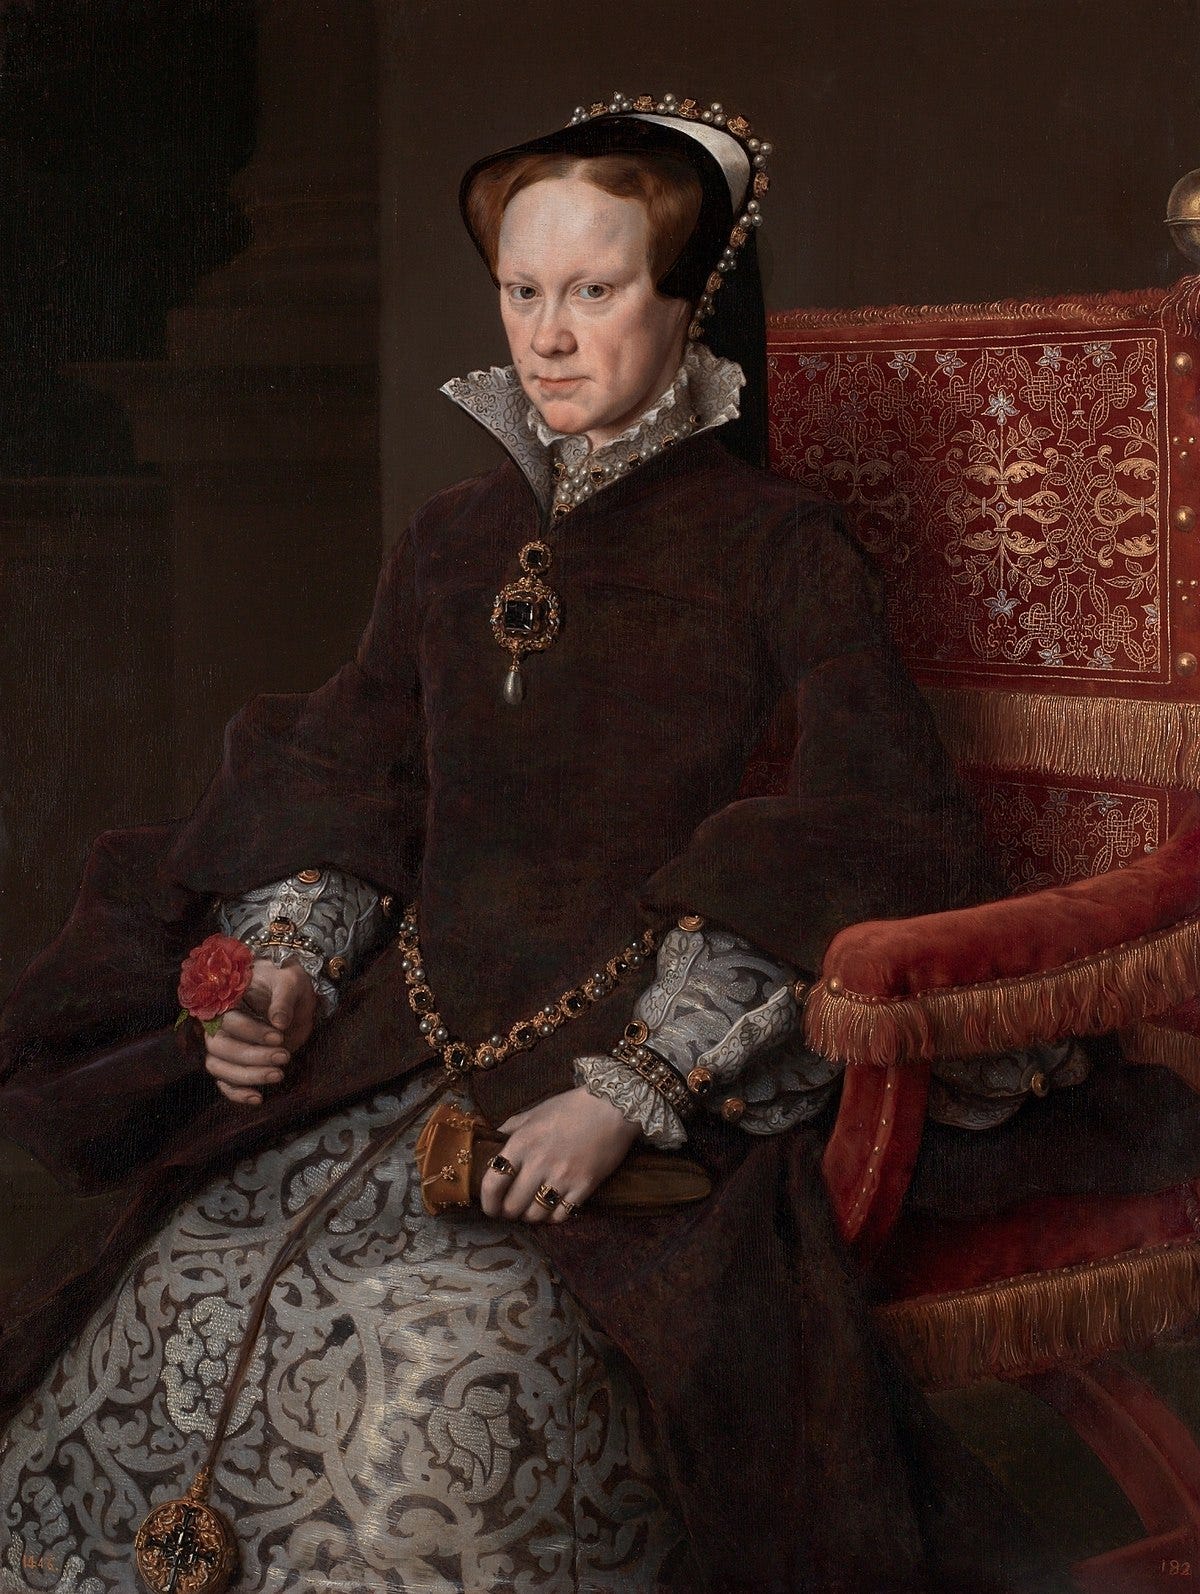 Mary I of England - Wikipedia